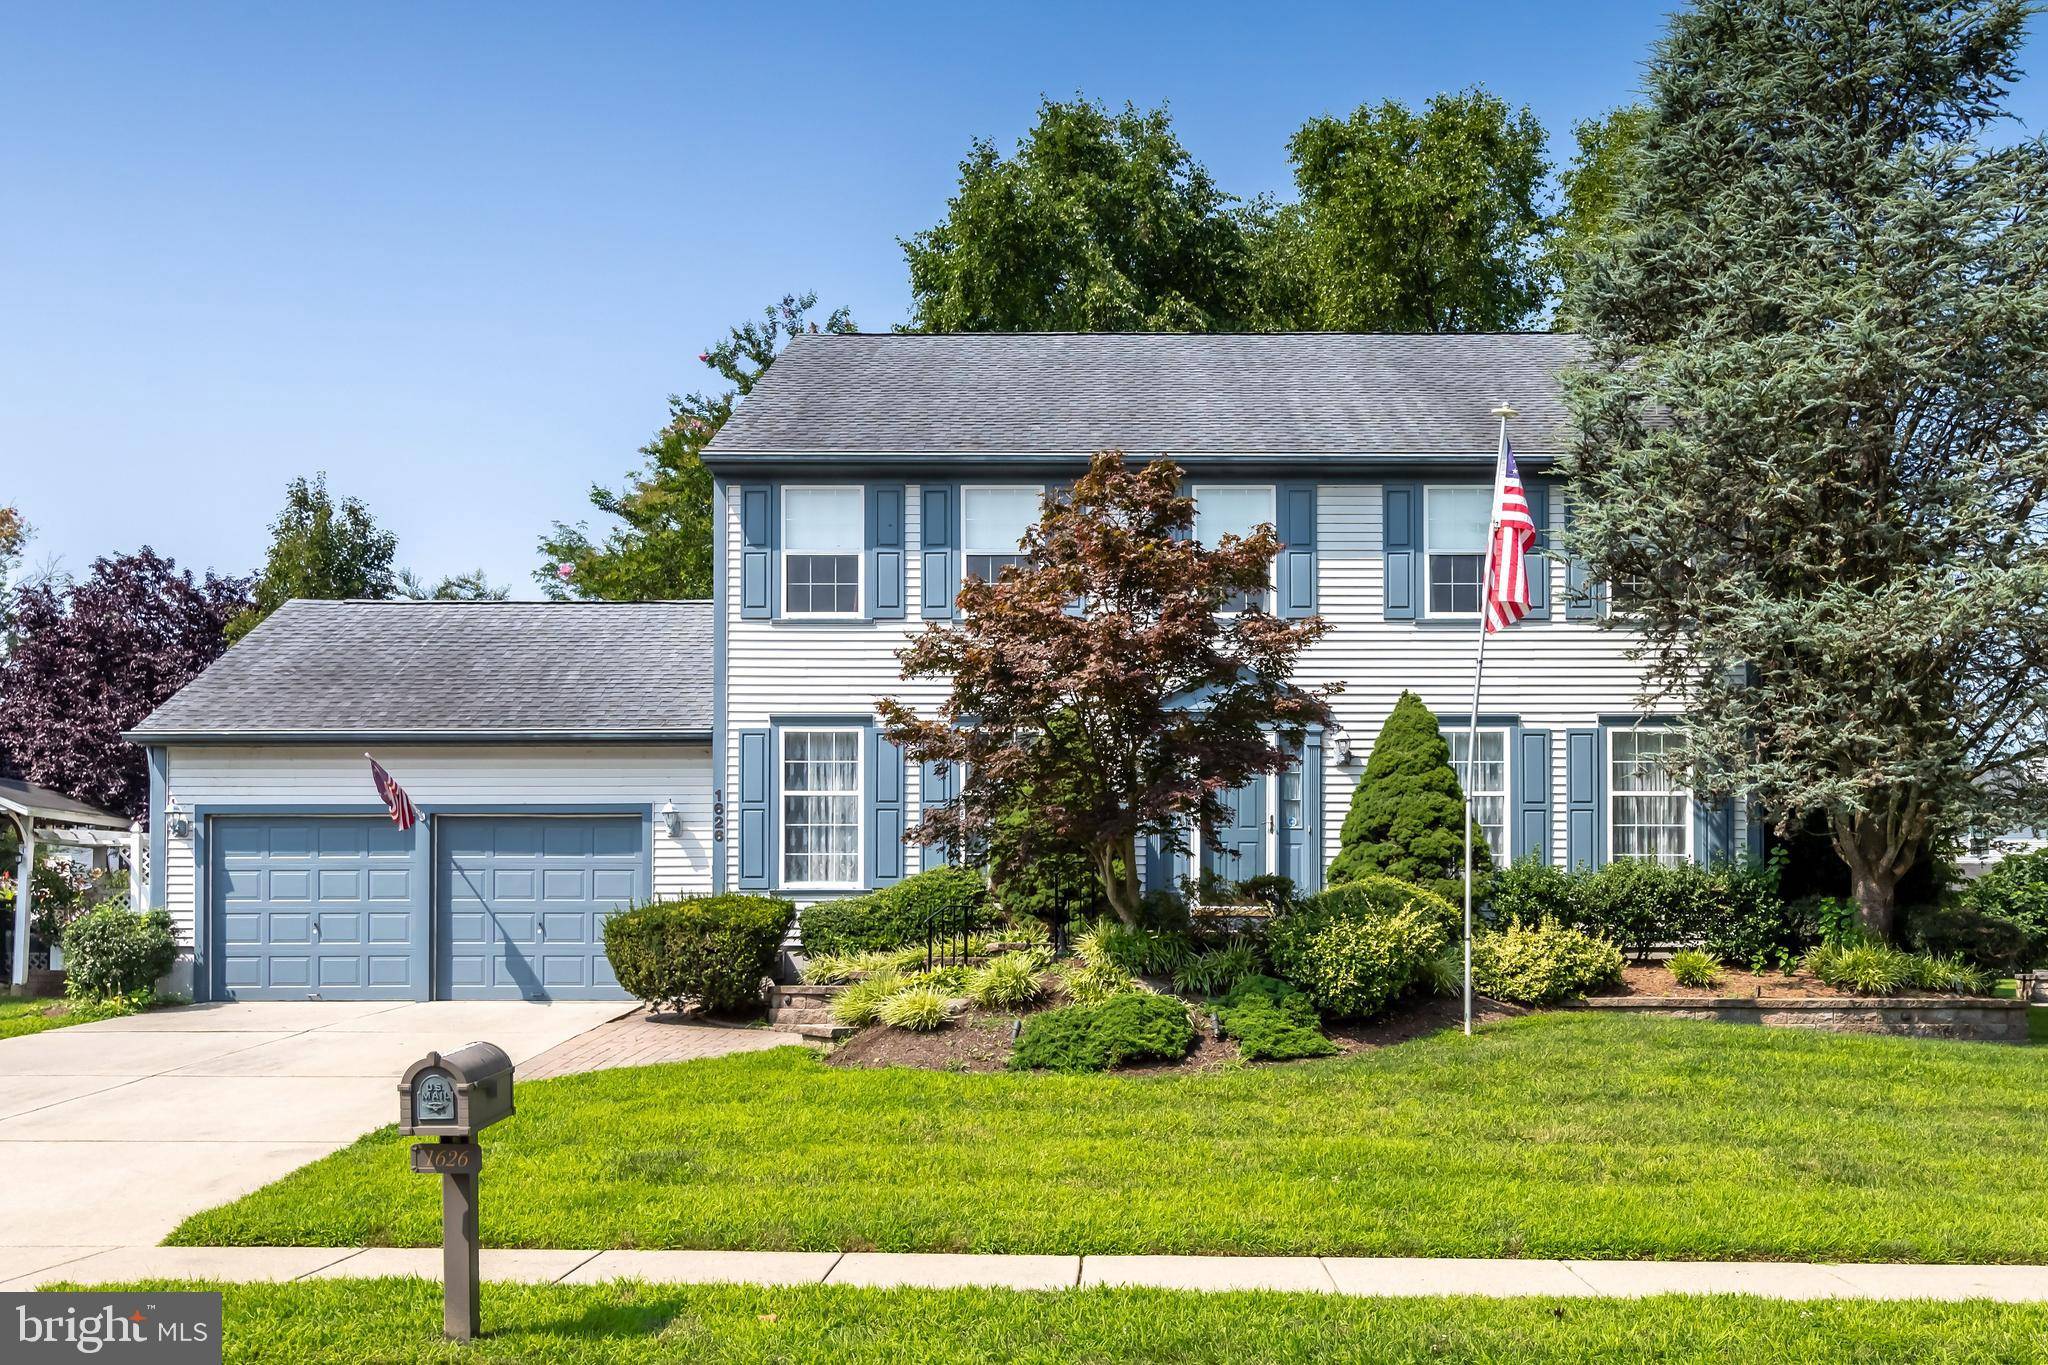 West Deptford, NJ Real Estate & Homes for Sale